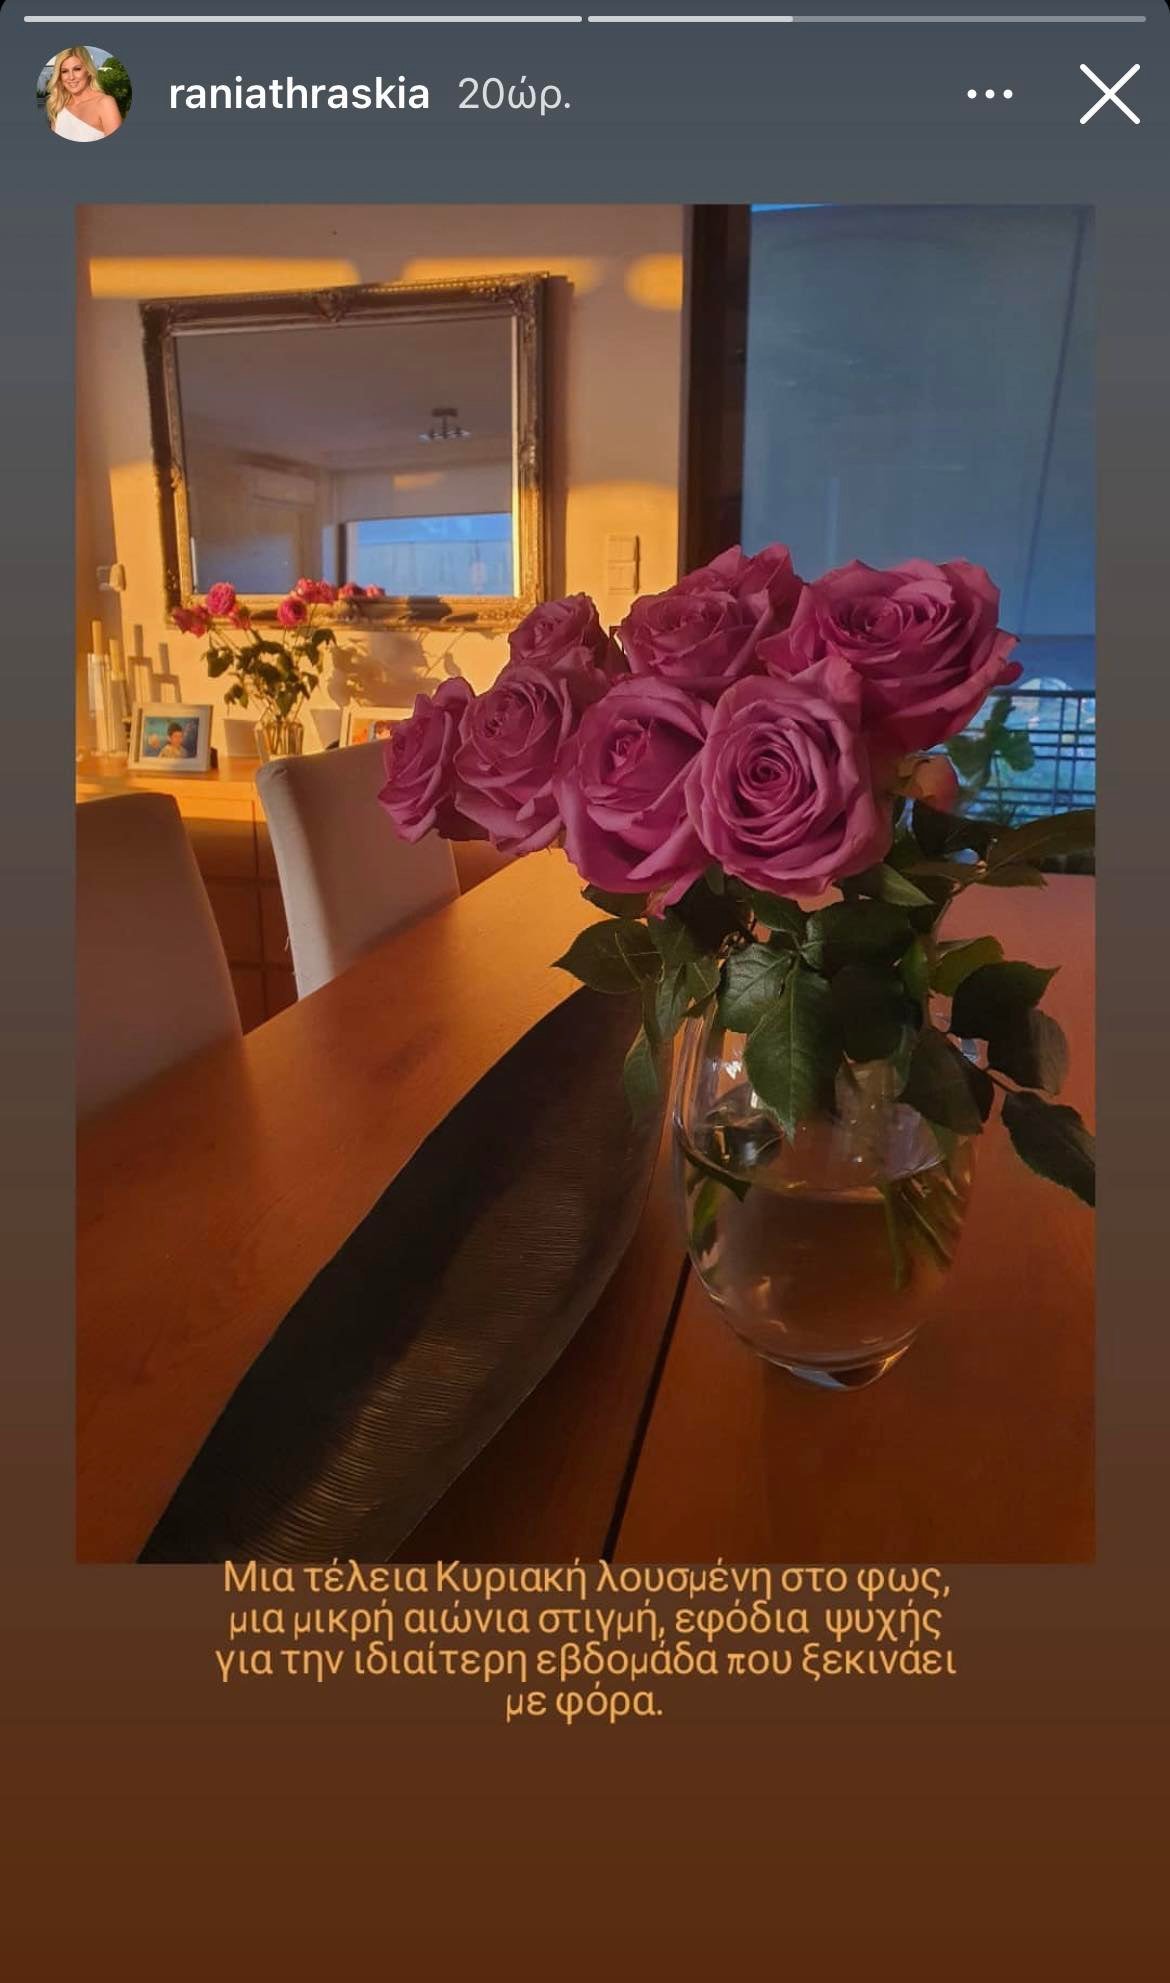 Ράνια Θρασκιά: Δείτε την κομψή τραπεζαρία της με το καφέ και το λευκό να κυριαρχούν- Τα λουλούδια κερδίζουν τις εντυπώσεις